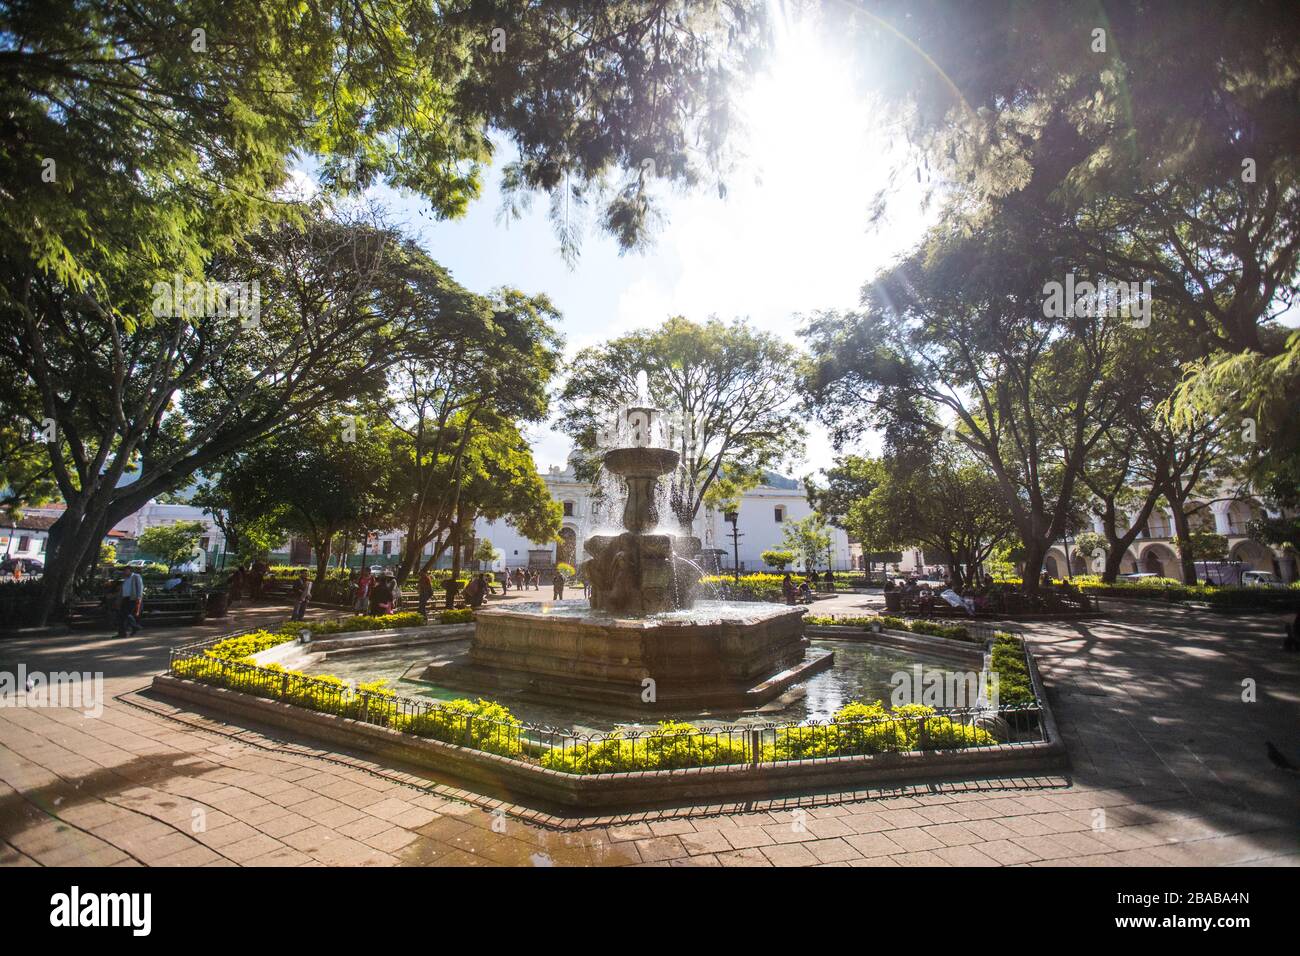 Central Park (Plaza Mayor), Antigua, Guatemala. Stock Photo